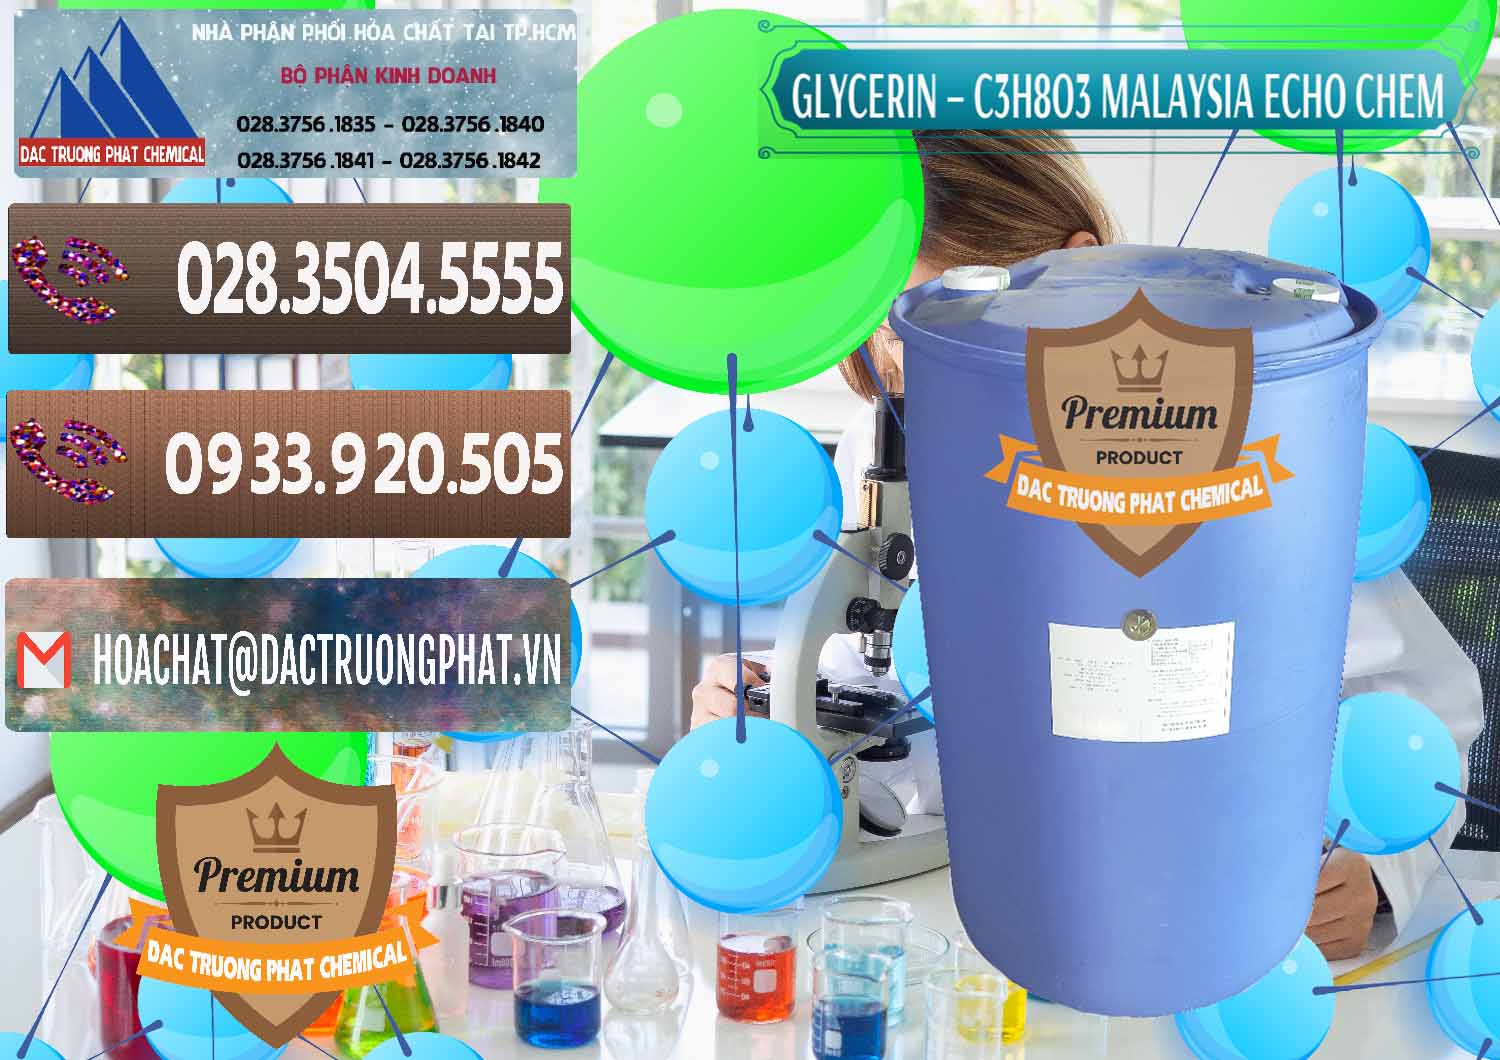 Cty bán & phân phối Glycerin – C3H8O3 99.7% Echo Chem Malaysia - 0273 - Phân phối & bán hóa chất tại TP.HCM - hoachatviet.net